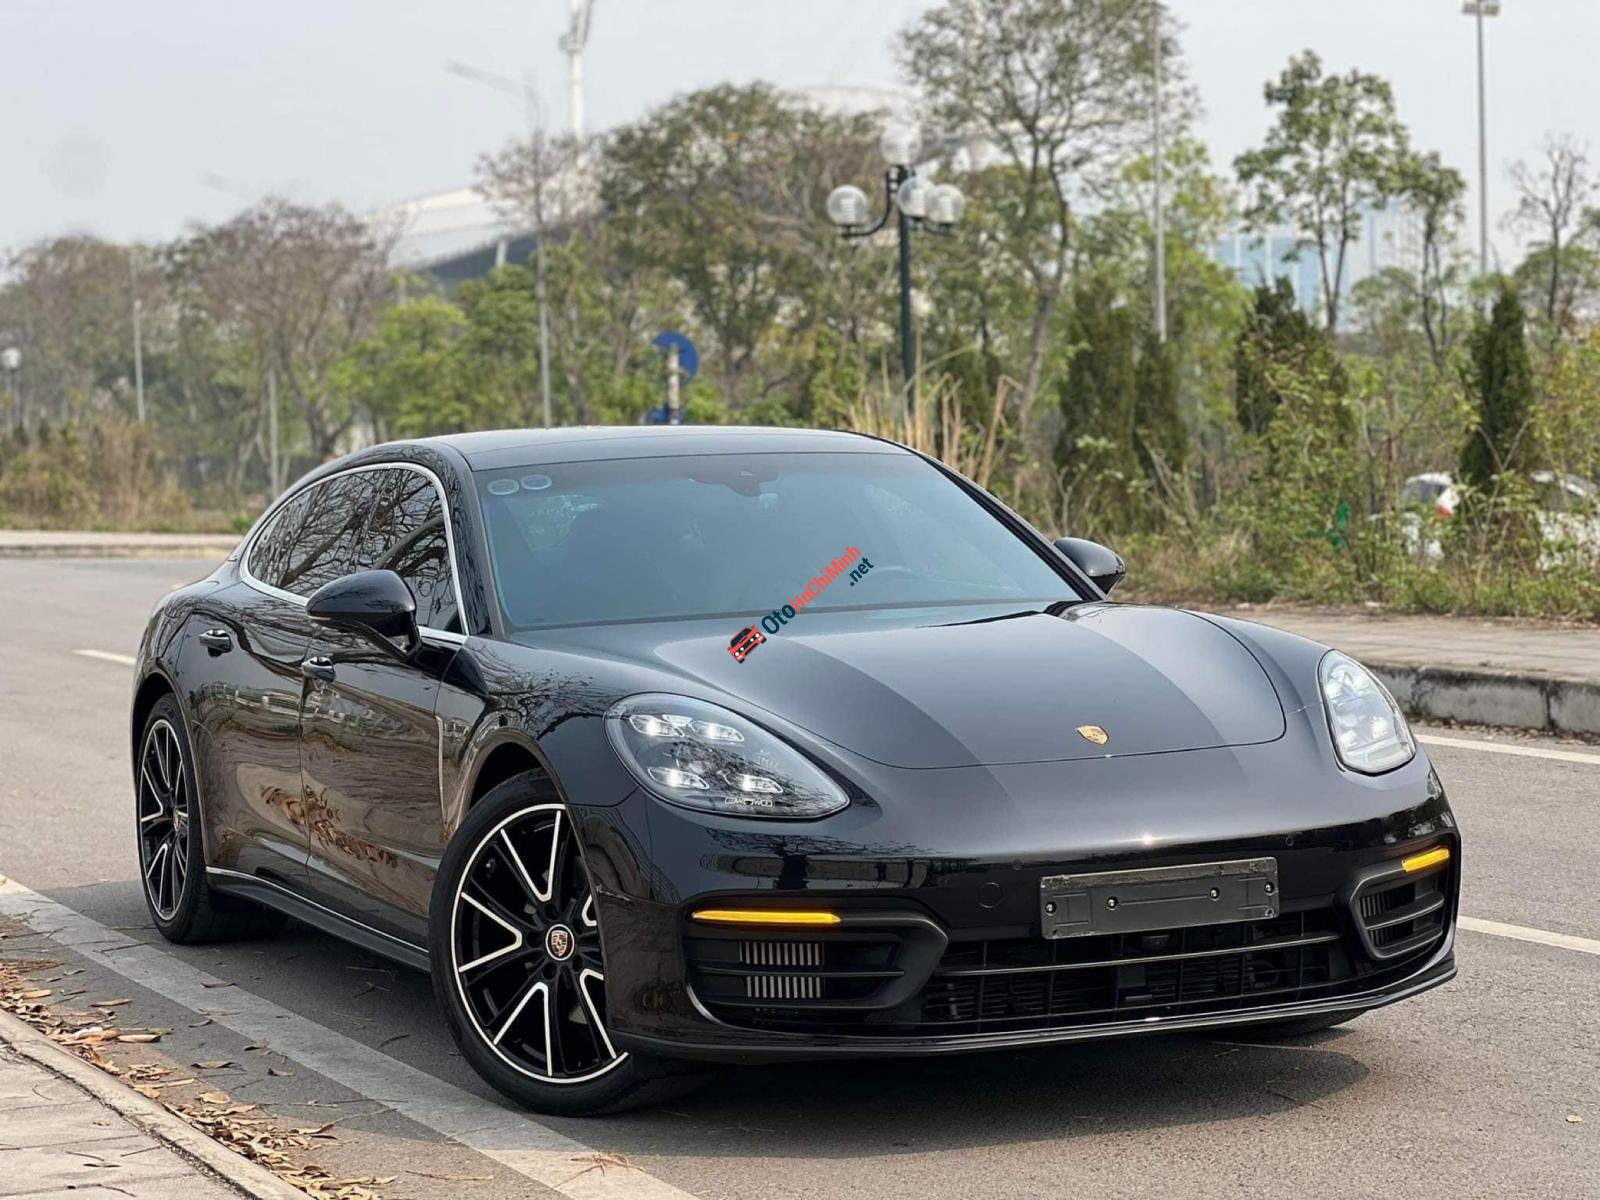 Khám phá Porsche Panamera 2021 tại Việt Nam  DoanhnhanPlusvn